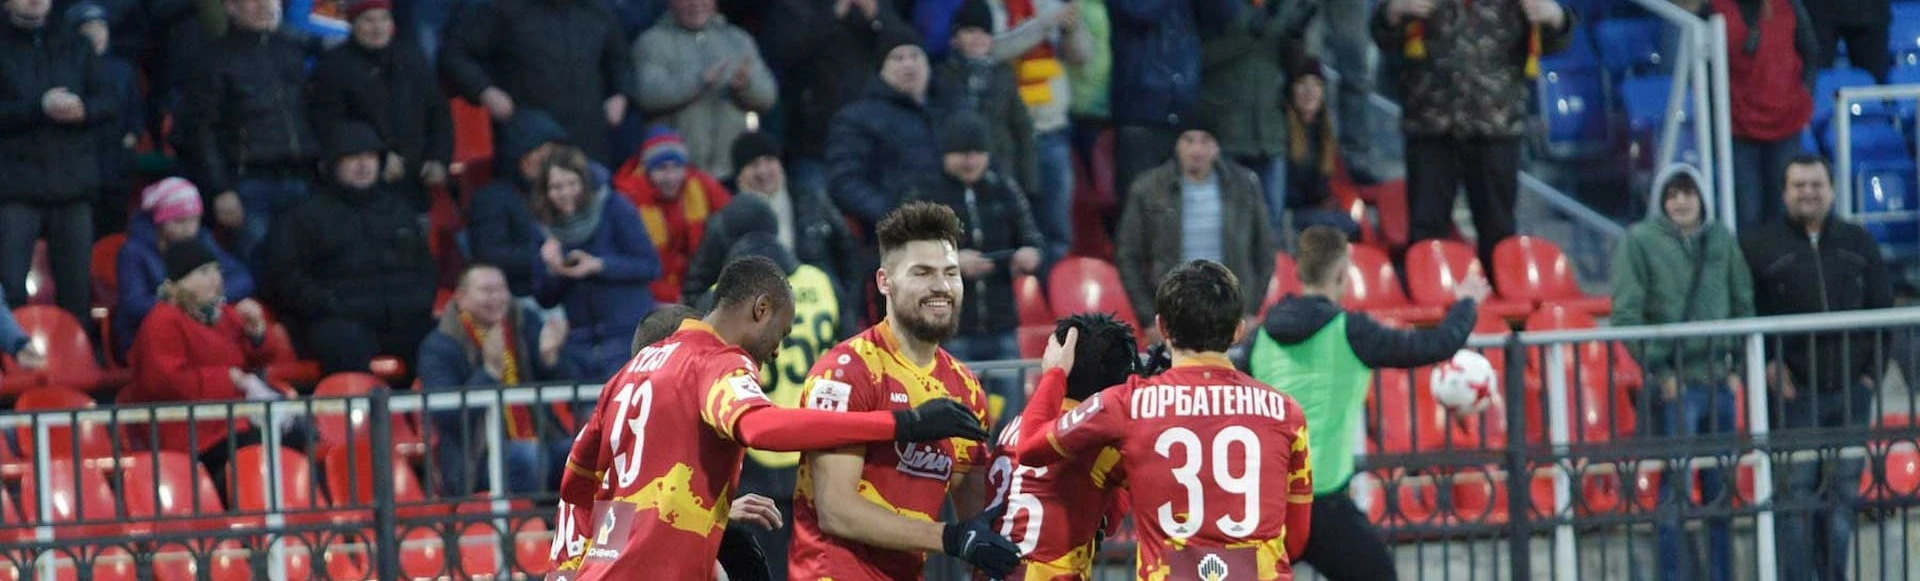 Победа над Северной Македонией!
